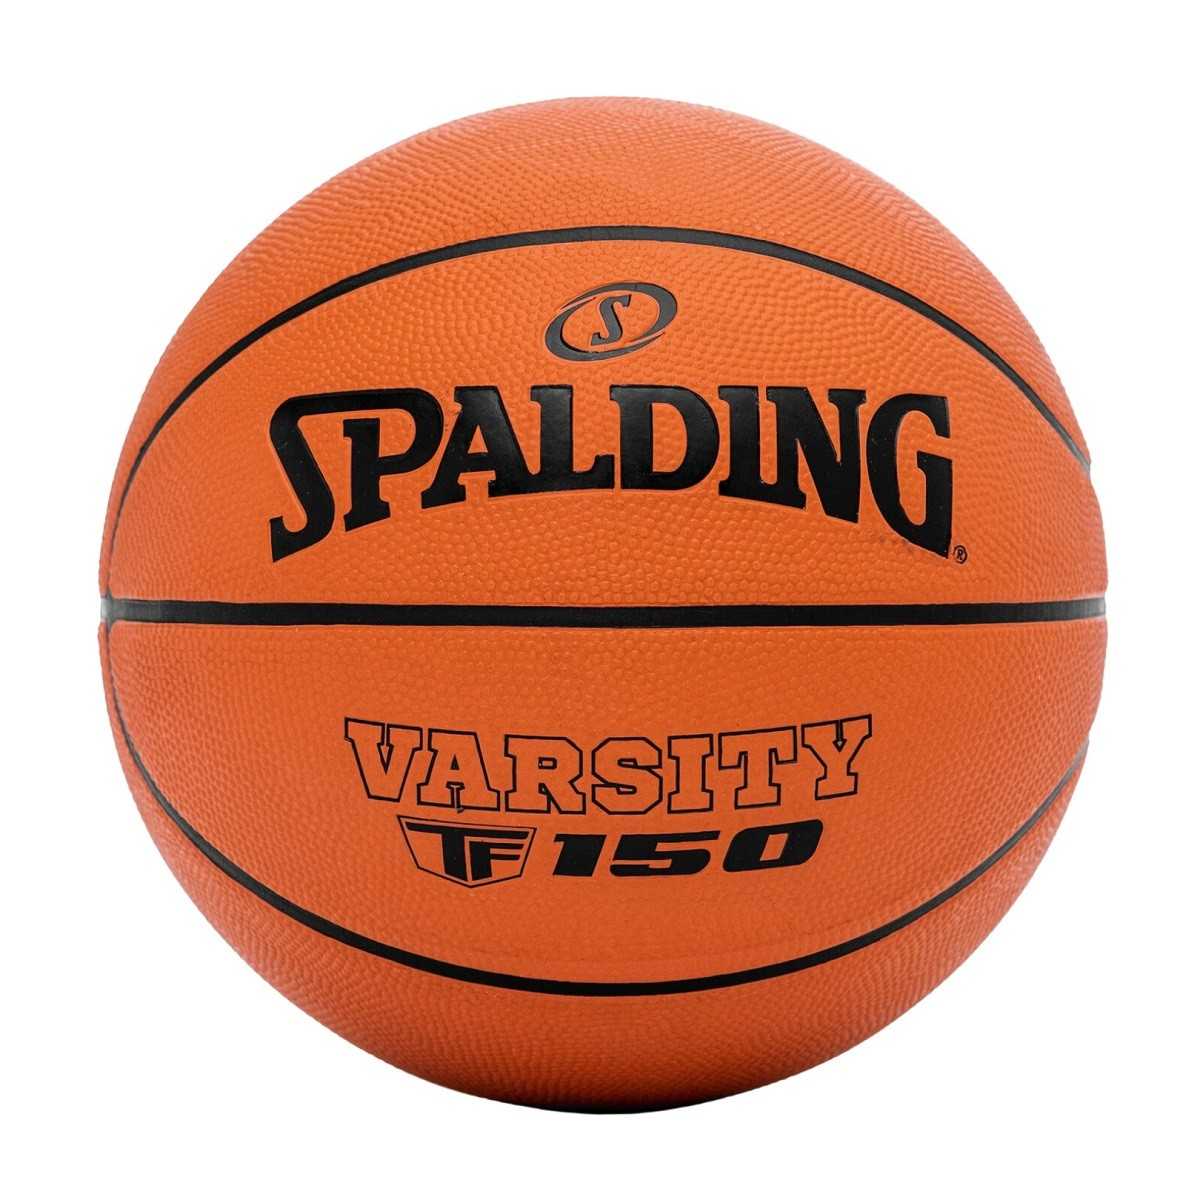 Spalding TF-150 Warsity krepšinio kamuolys, 6 